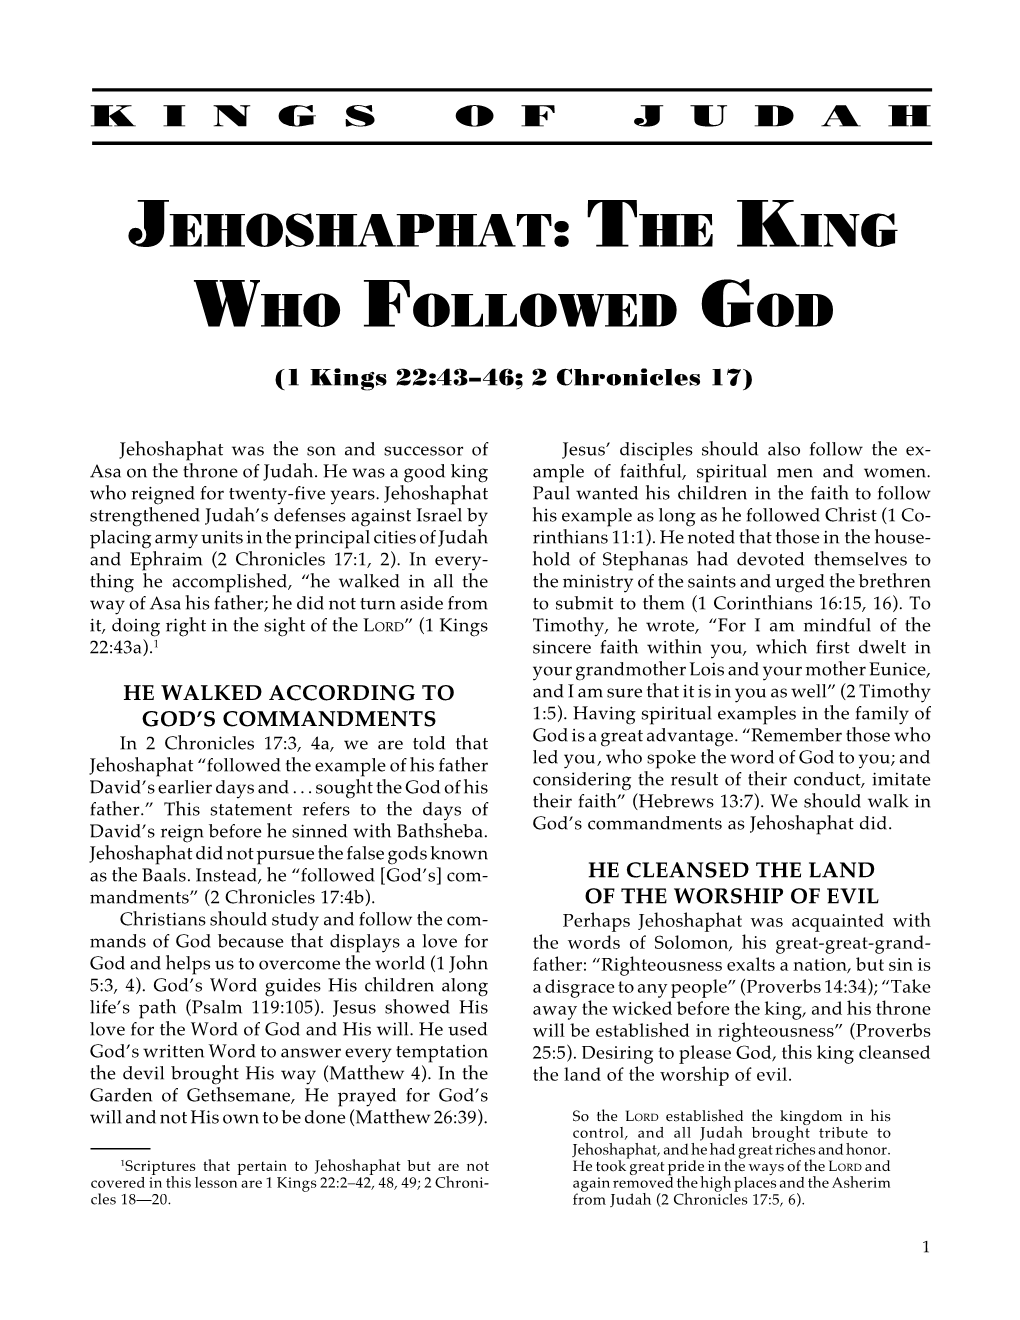 Jehoshaphat: the King Who Followed God